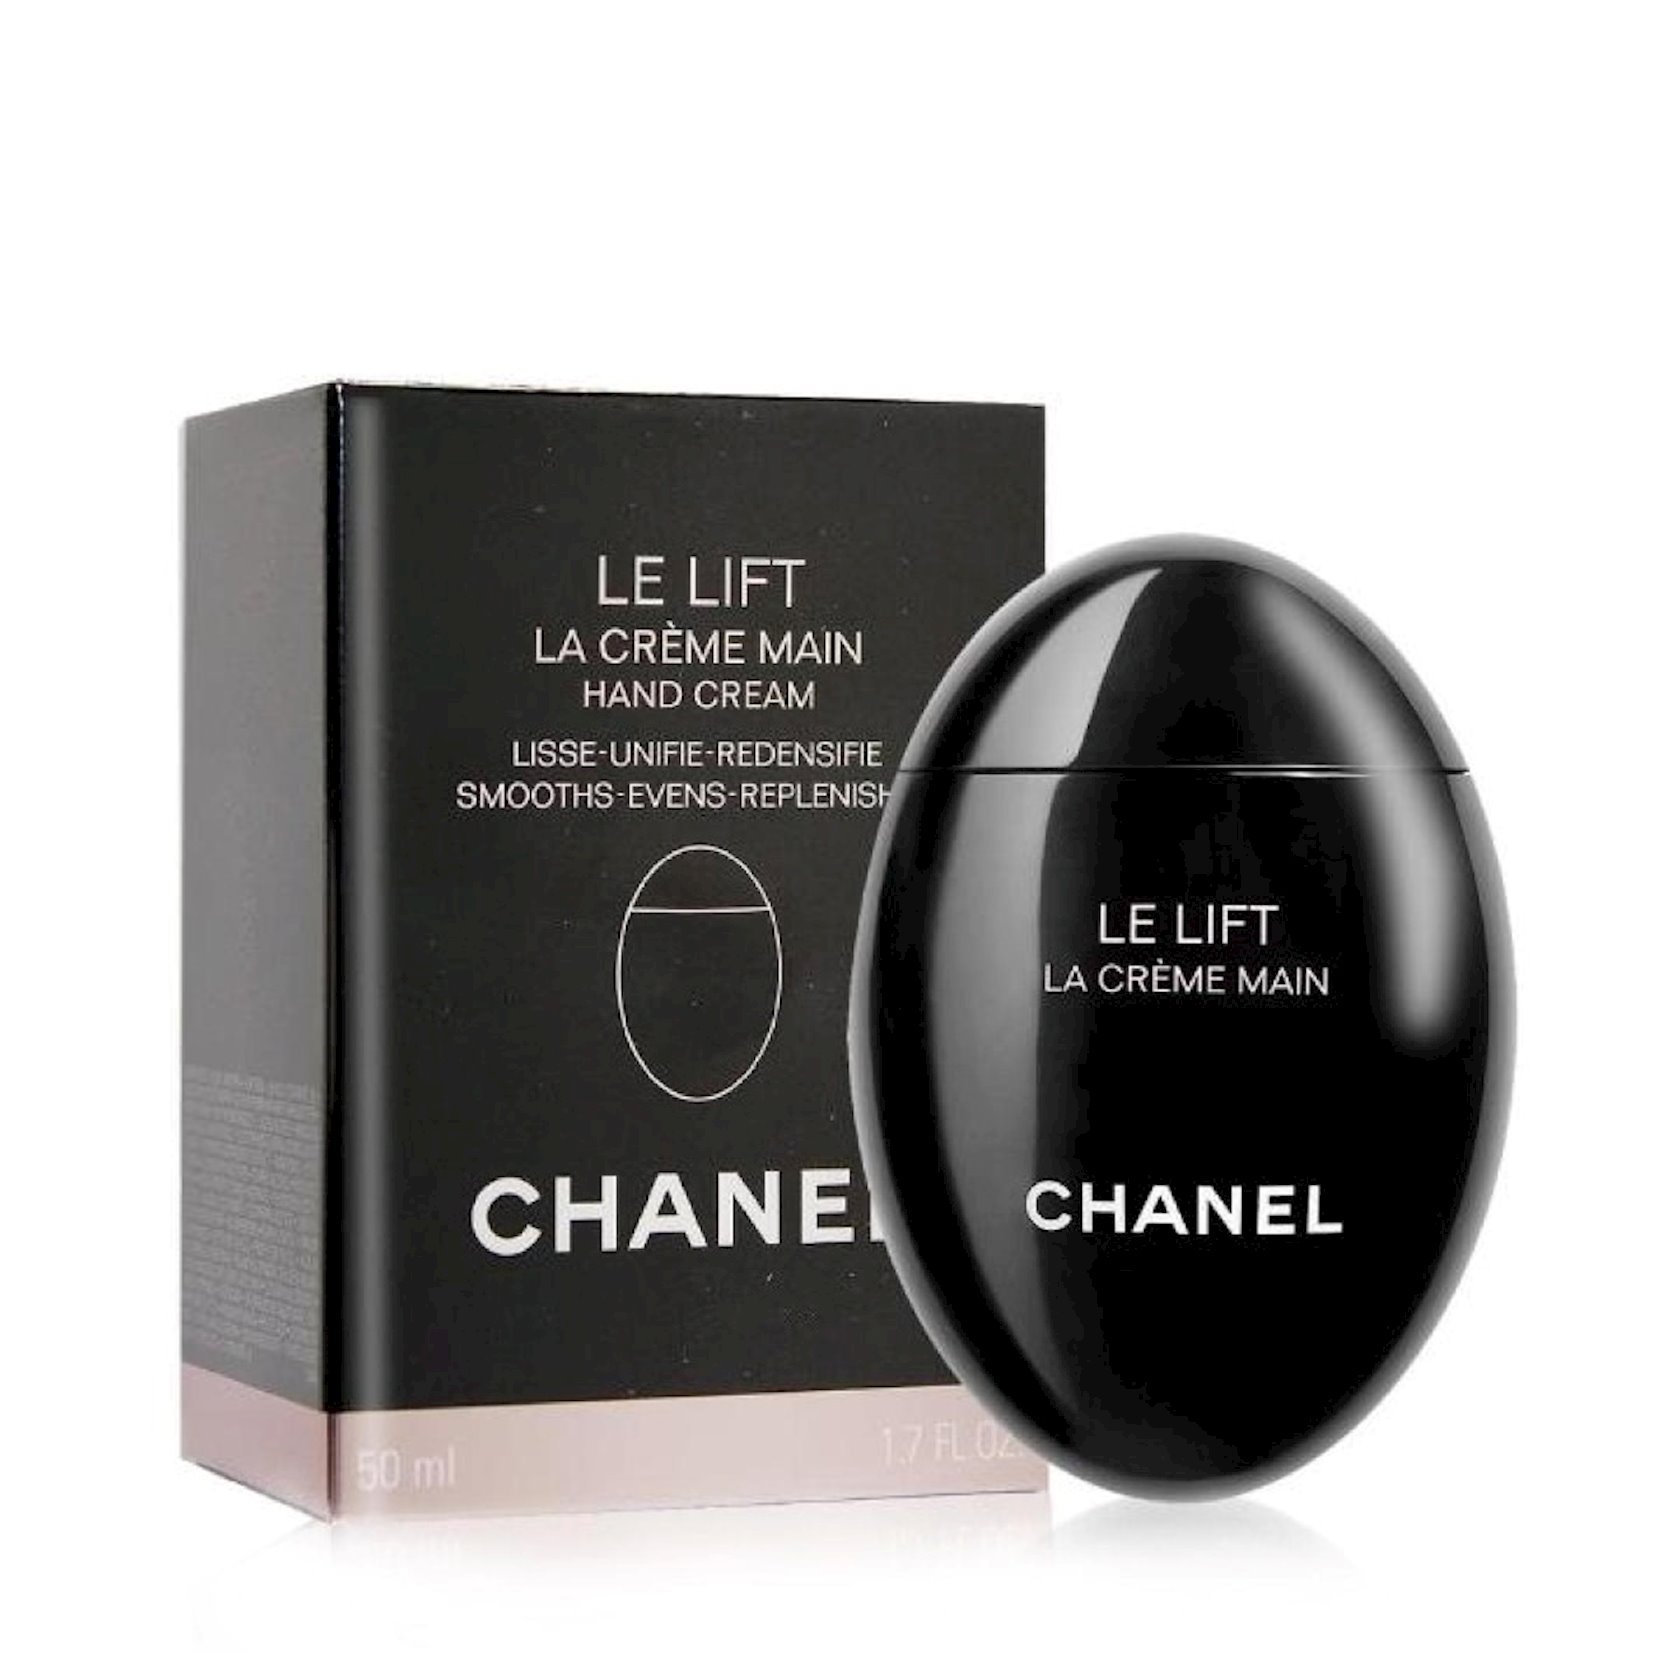 CHANEL, Bath & Body, Chanel Le Lift La Crme Main